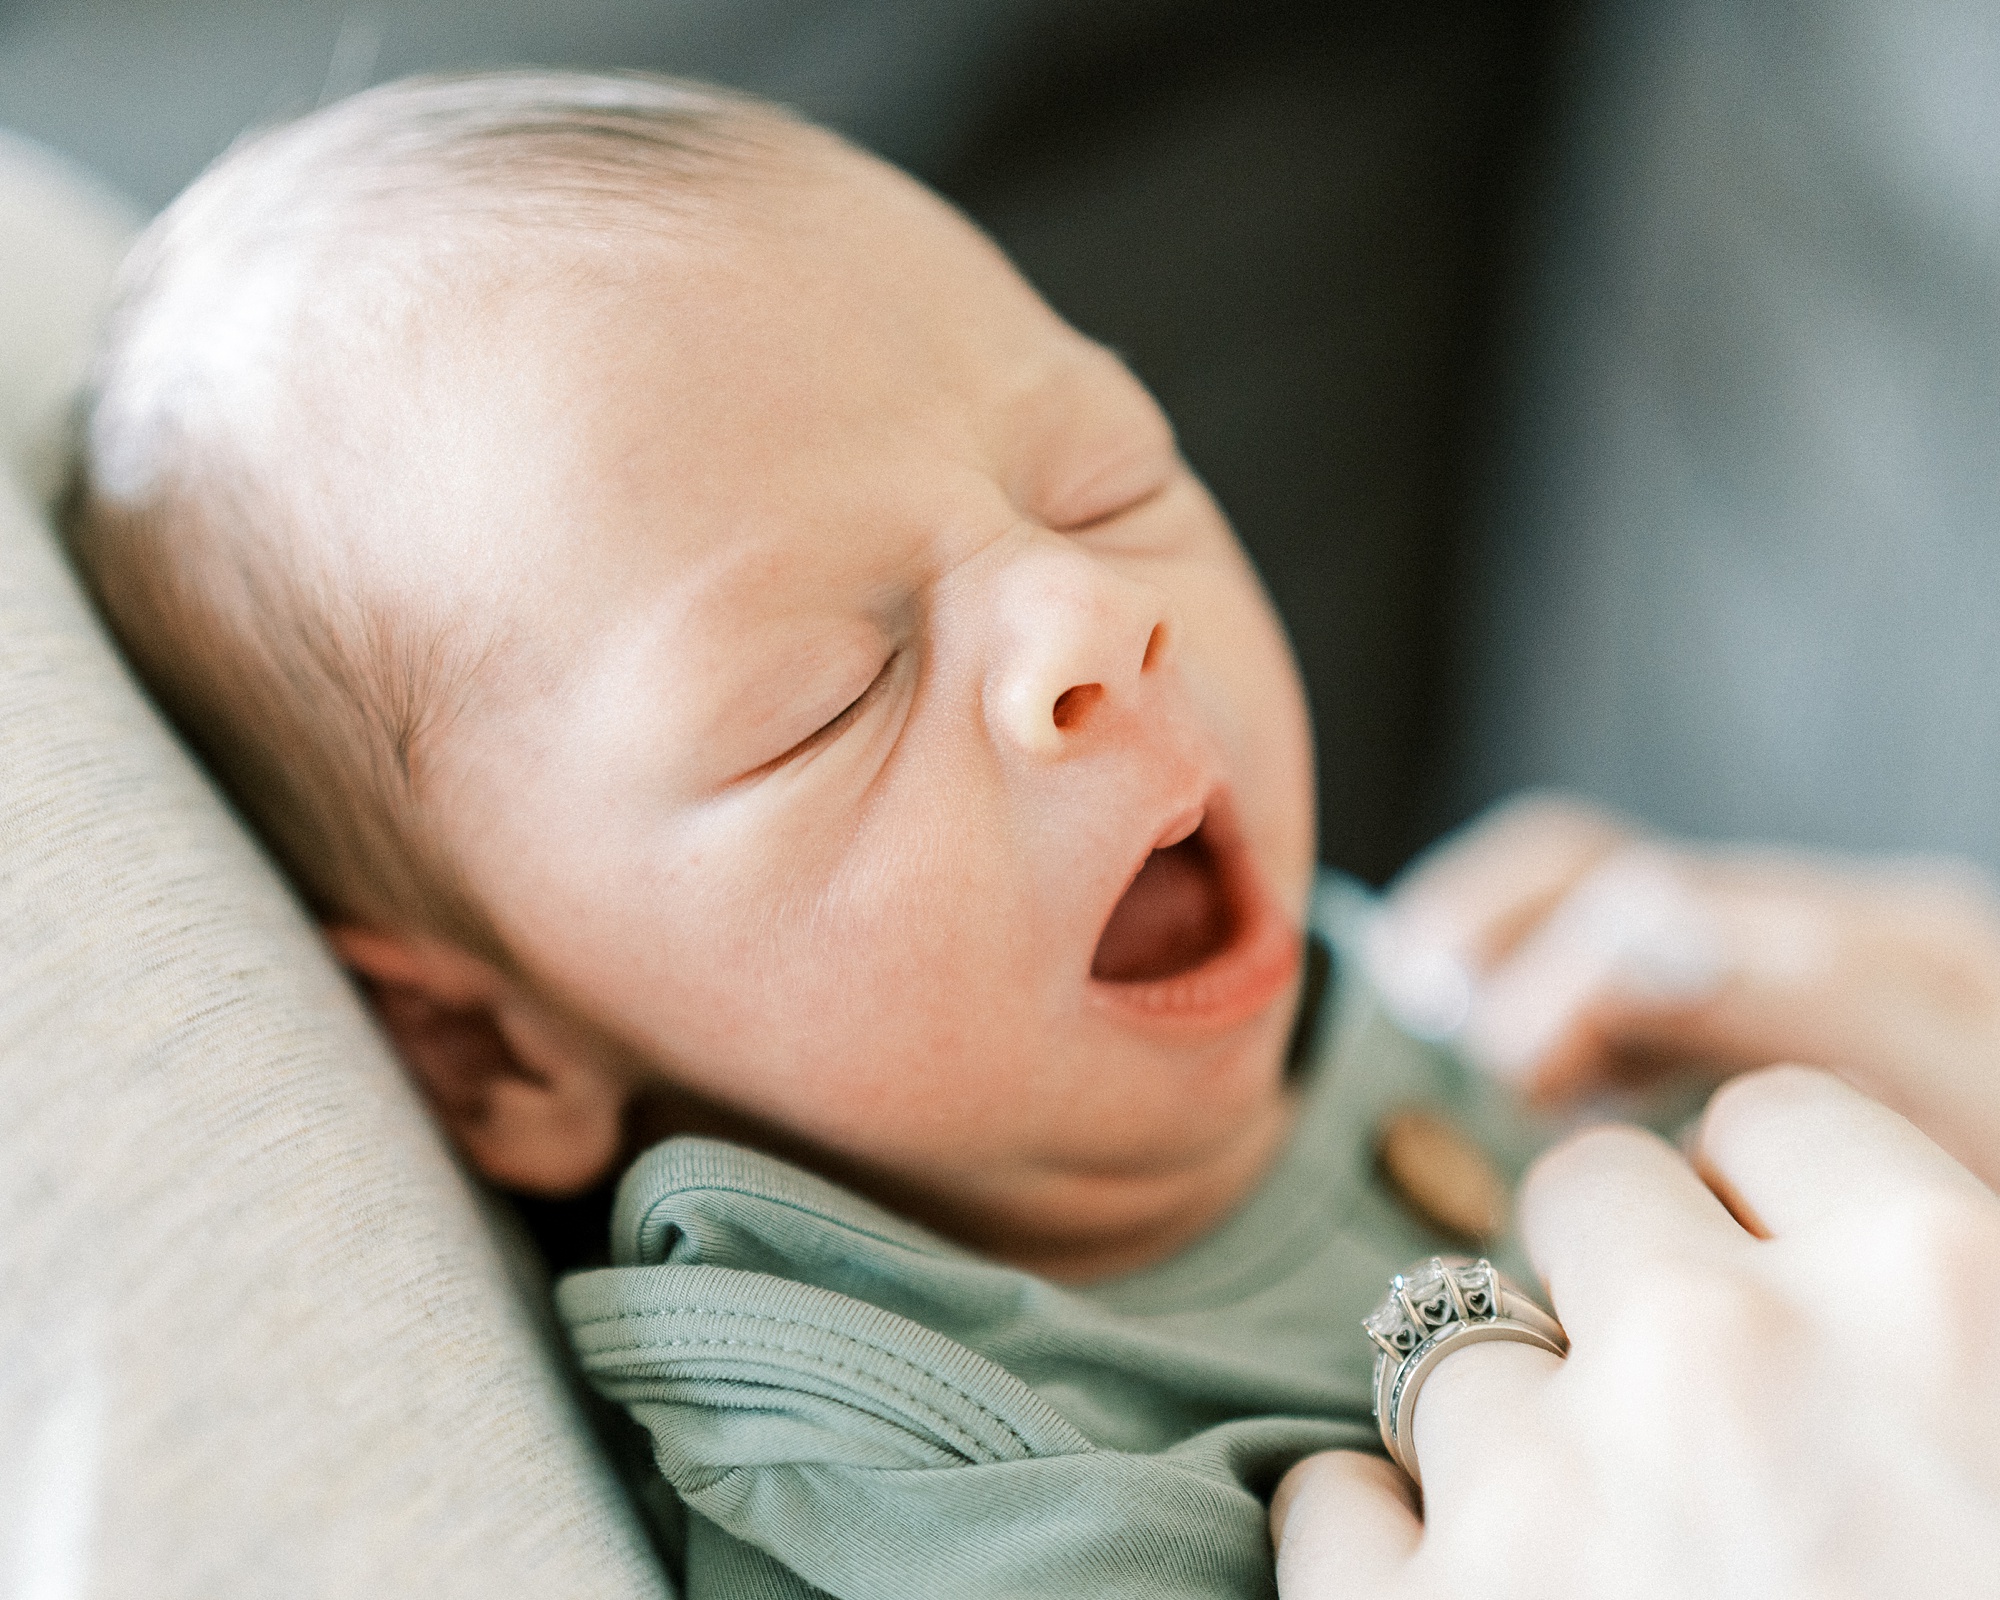 newborn baby sleeps during In Home Lifestyle Newborn photos